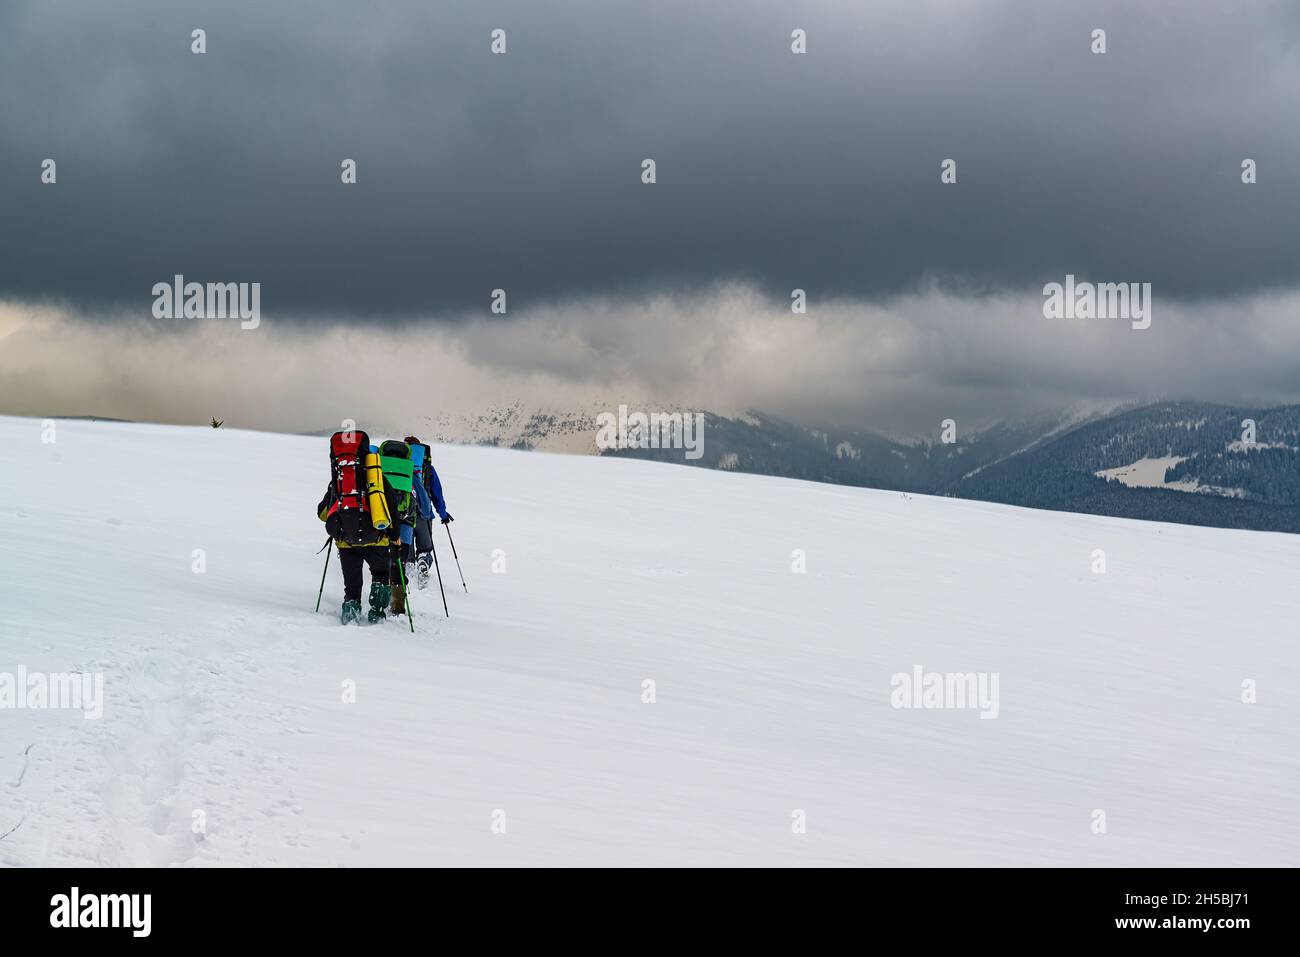 Eine Gruppe von Wanderern erkundet die Schneewüste hoch in den Bergen. Extreme Outdoor-Aktivitäten im Winter Stockfoto